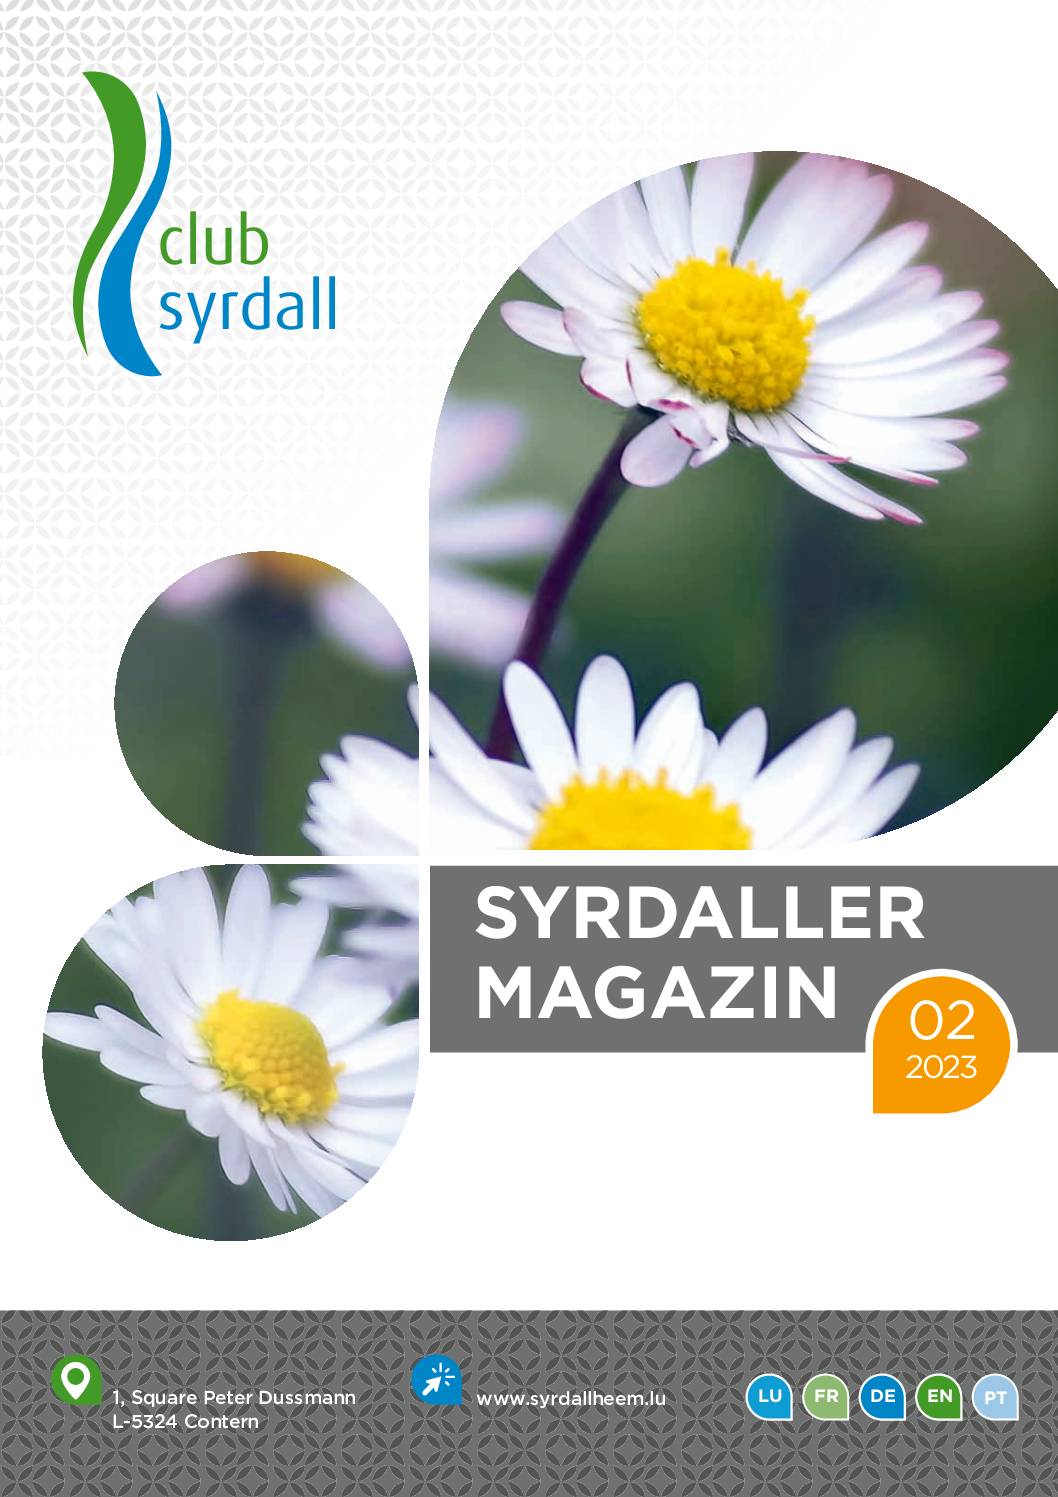 club syrdall Bro Syrdaller Magazin 022023 WEB 91967